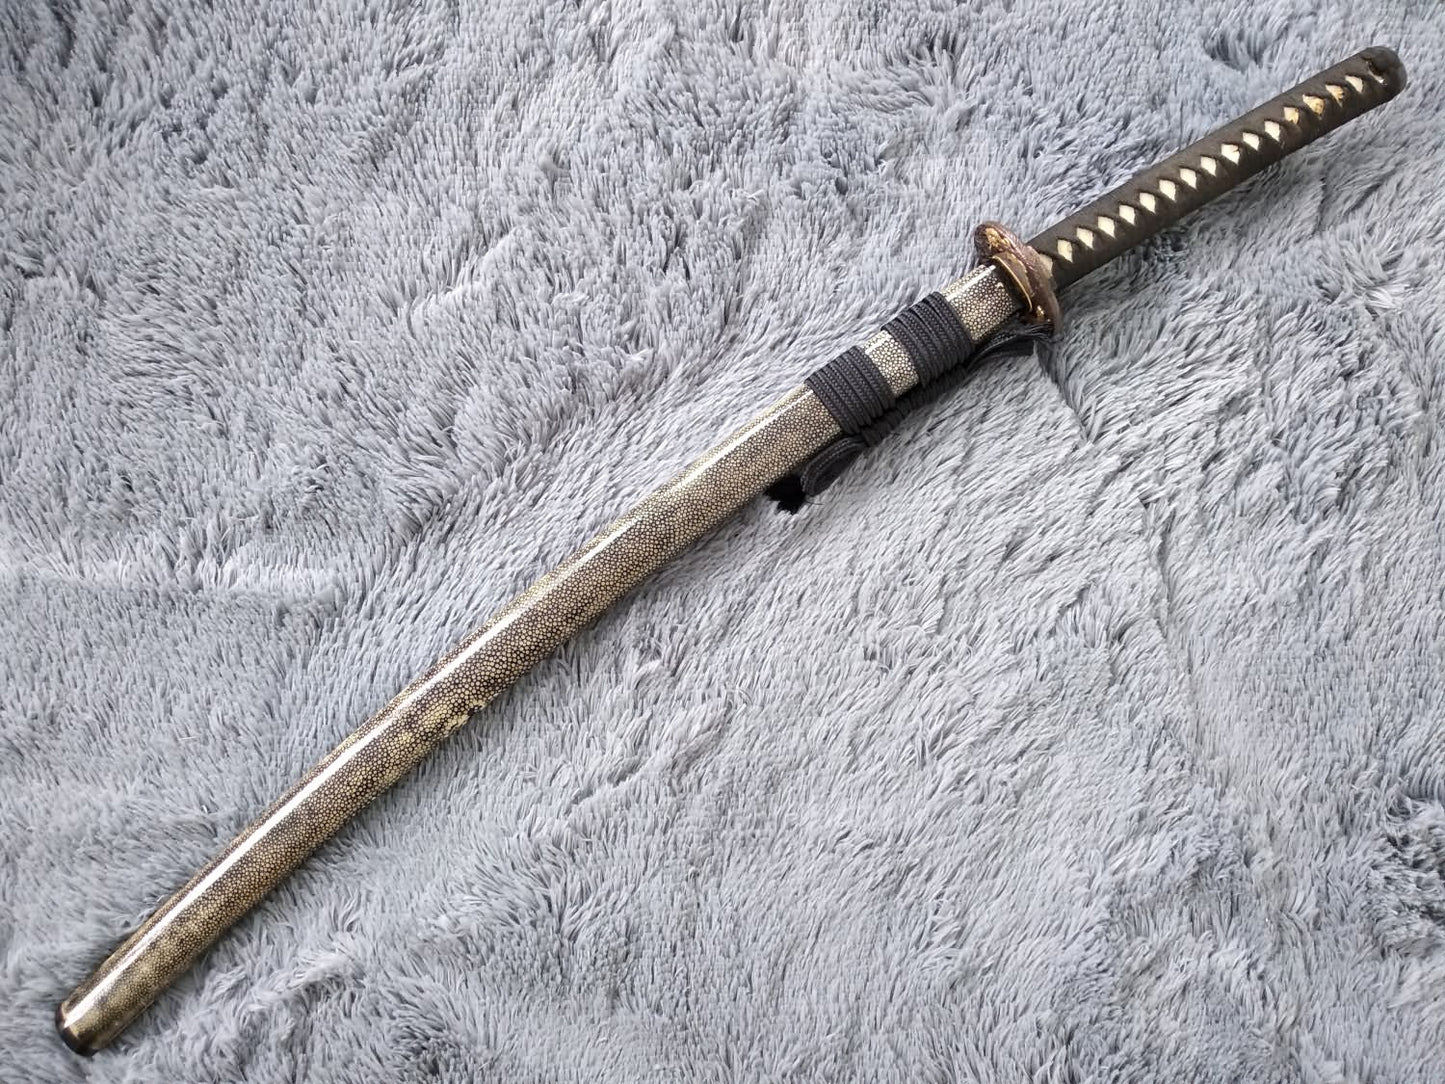 Samurai sword,Katana,Damascus steel burn blade,Skin scabbard,Brass tosogu - Chinese sword shop